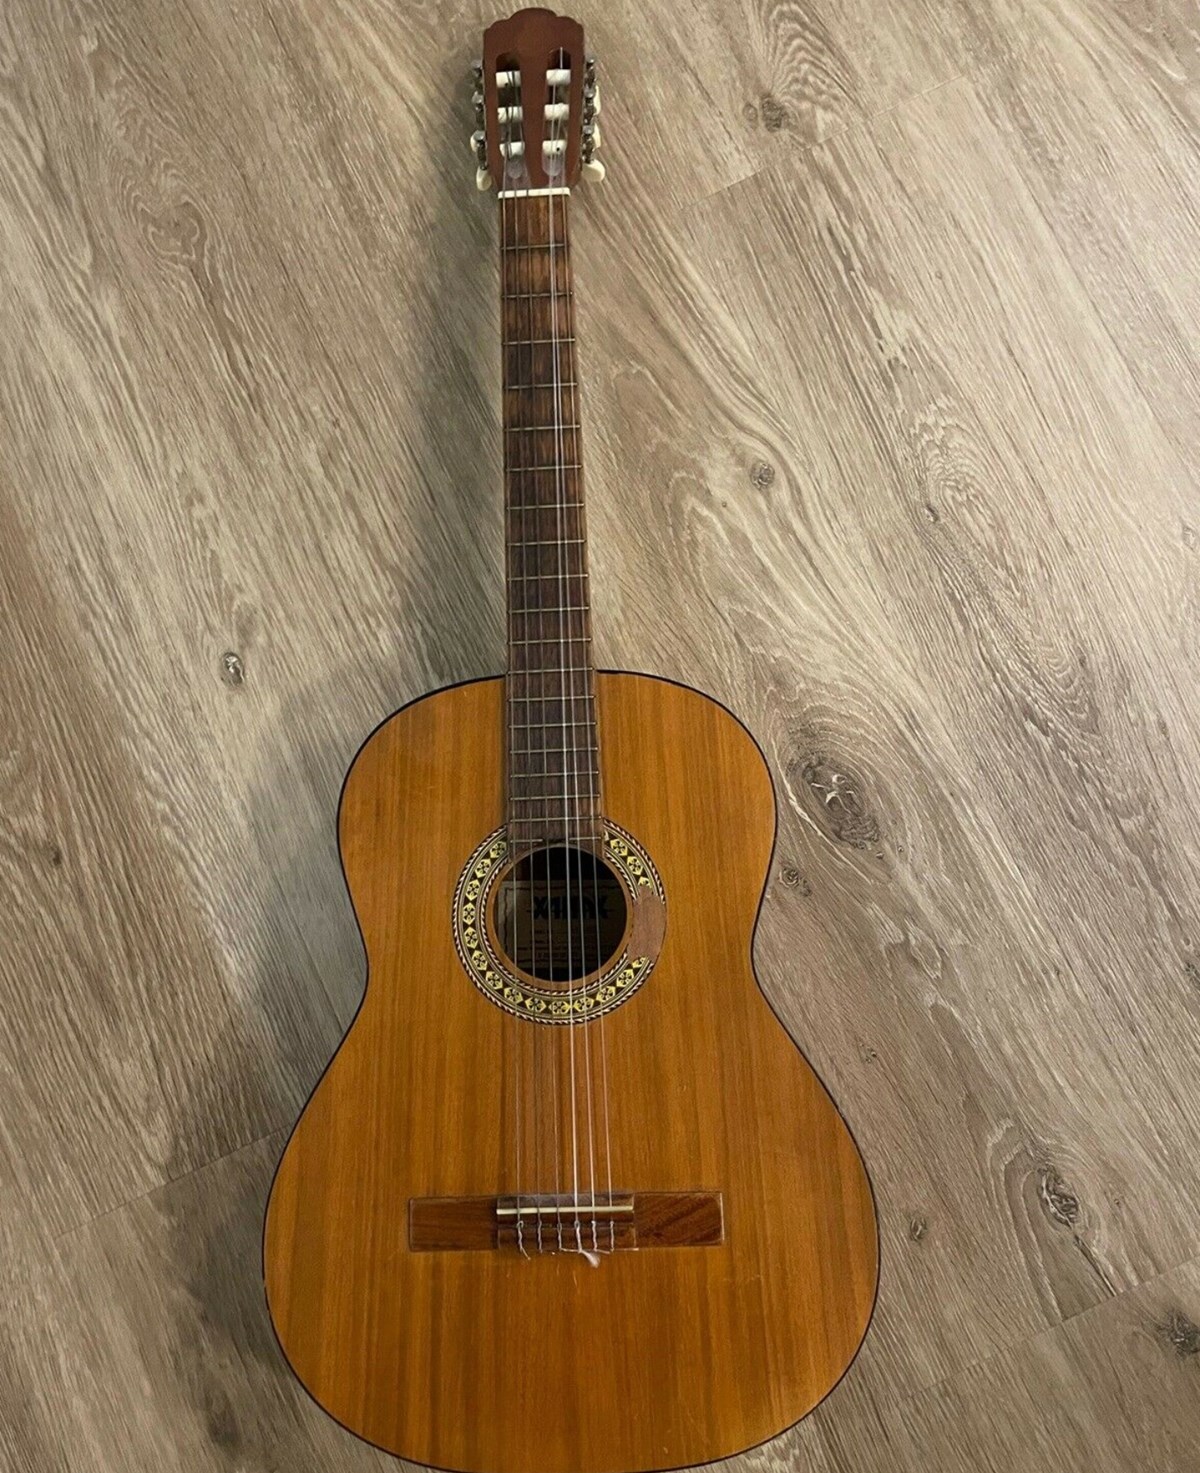 Du skal til Hvidovre, hvis denne klassiske guitar af mærket Xanax skal blive din. Det er nemlig i Hvidovre, at sælgeren fra DBA bor. Han håber at få 150 kroner for guitaren.